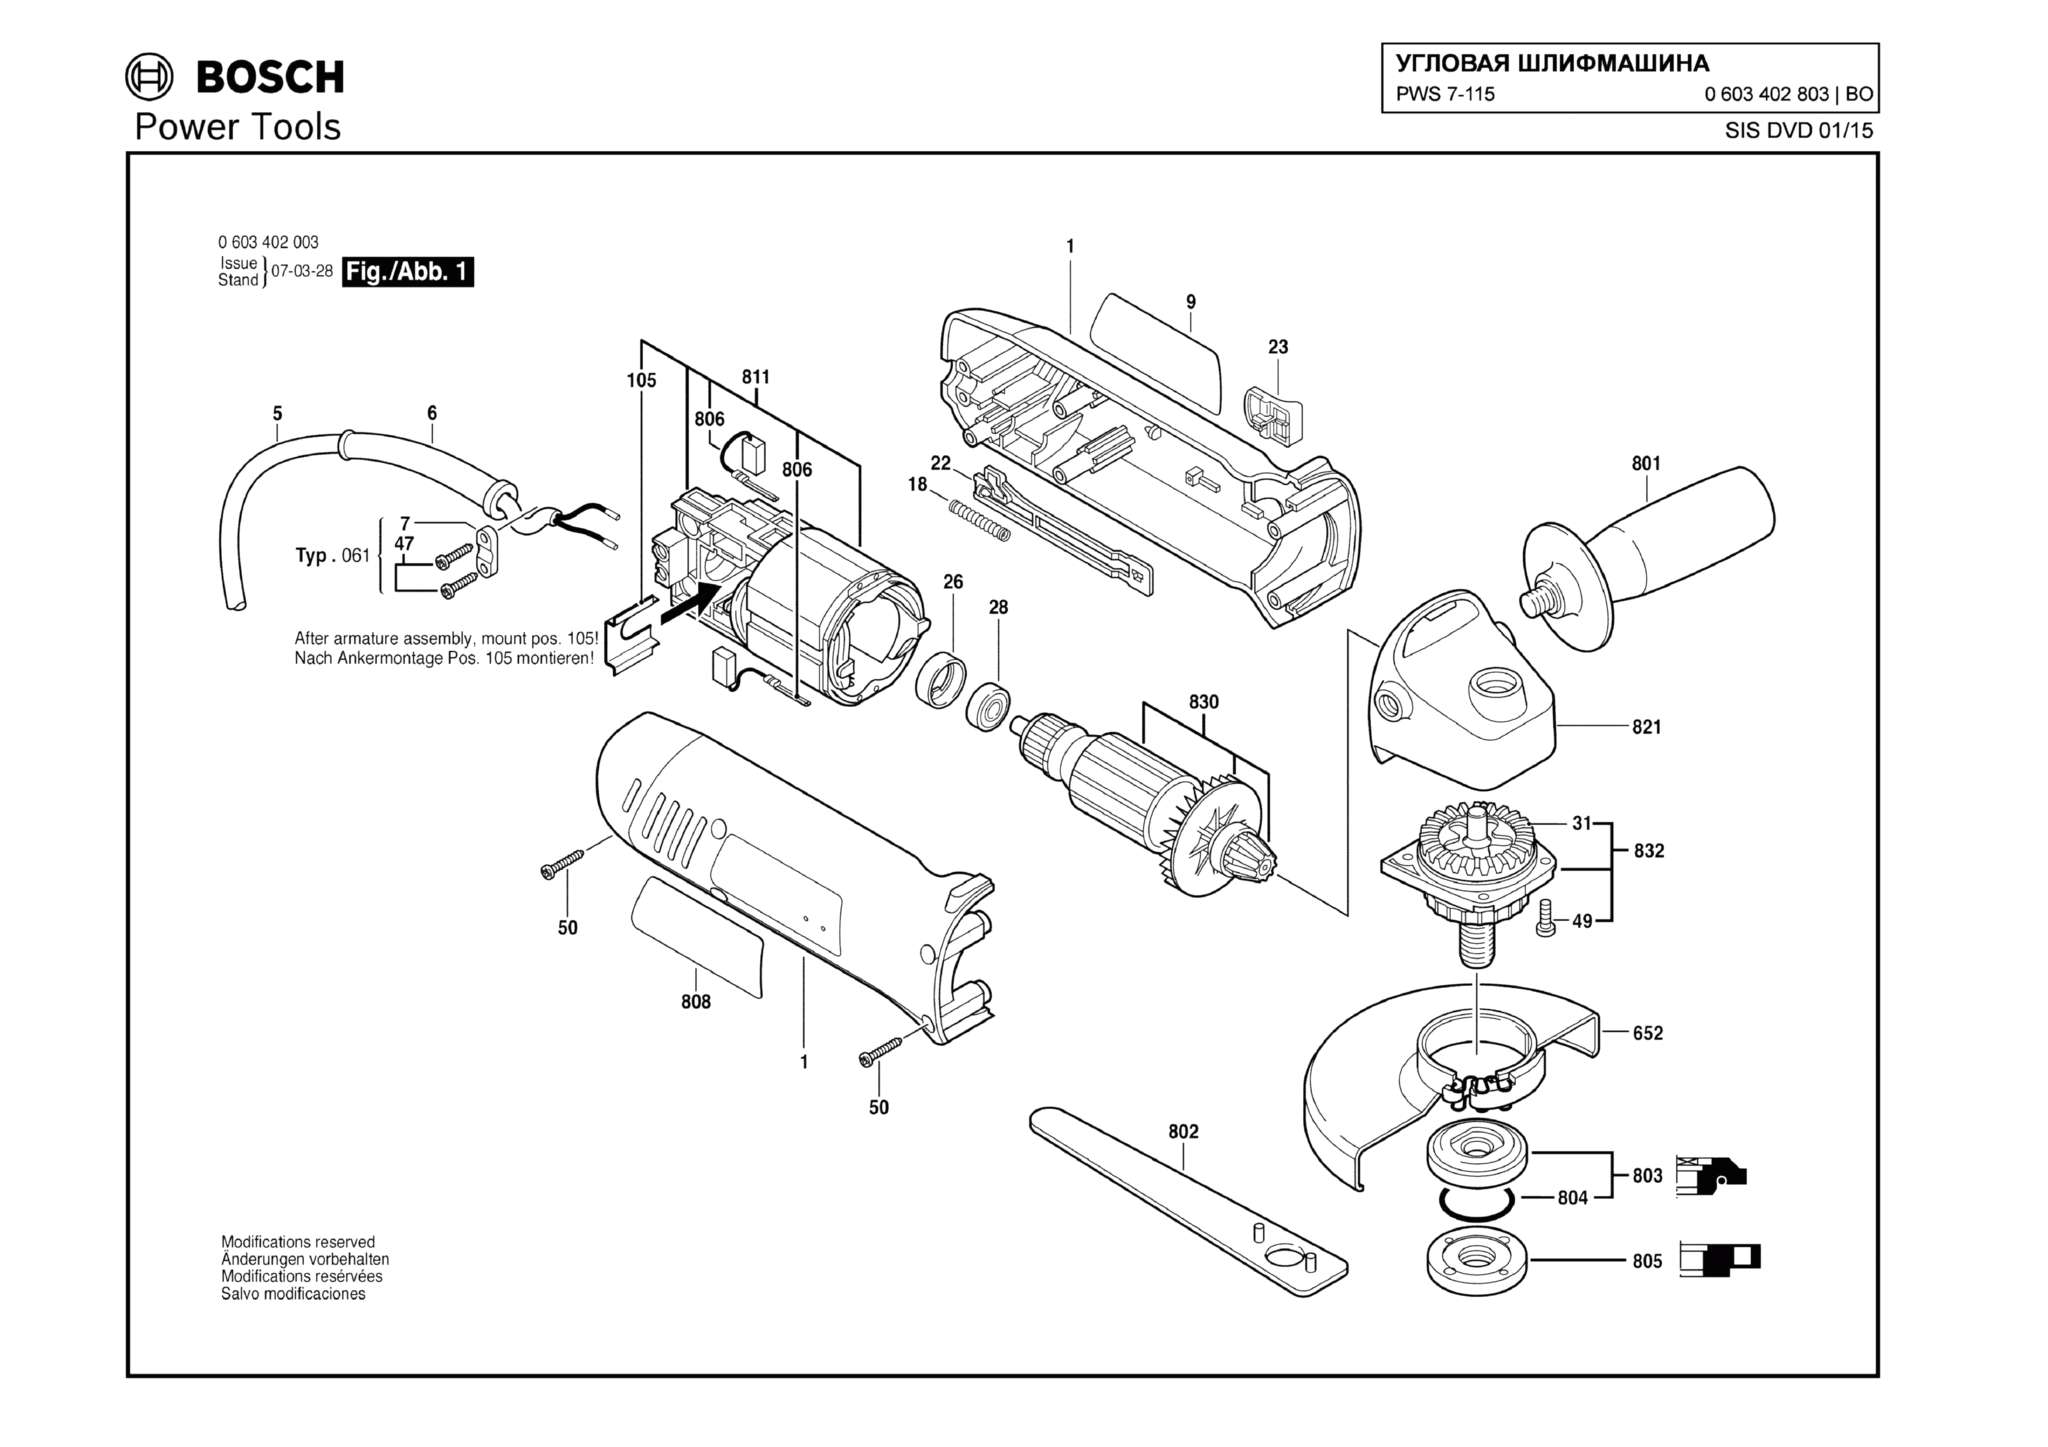 Запчасти, схема и деталировка Bosch PWS 7-115 (ТИП 0603402803)